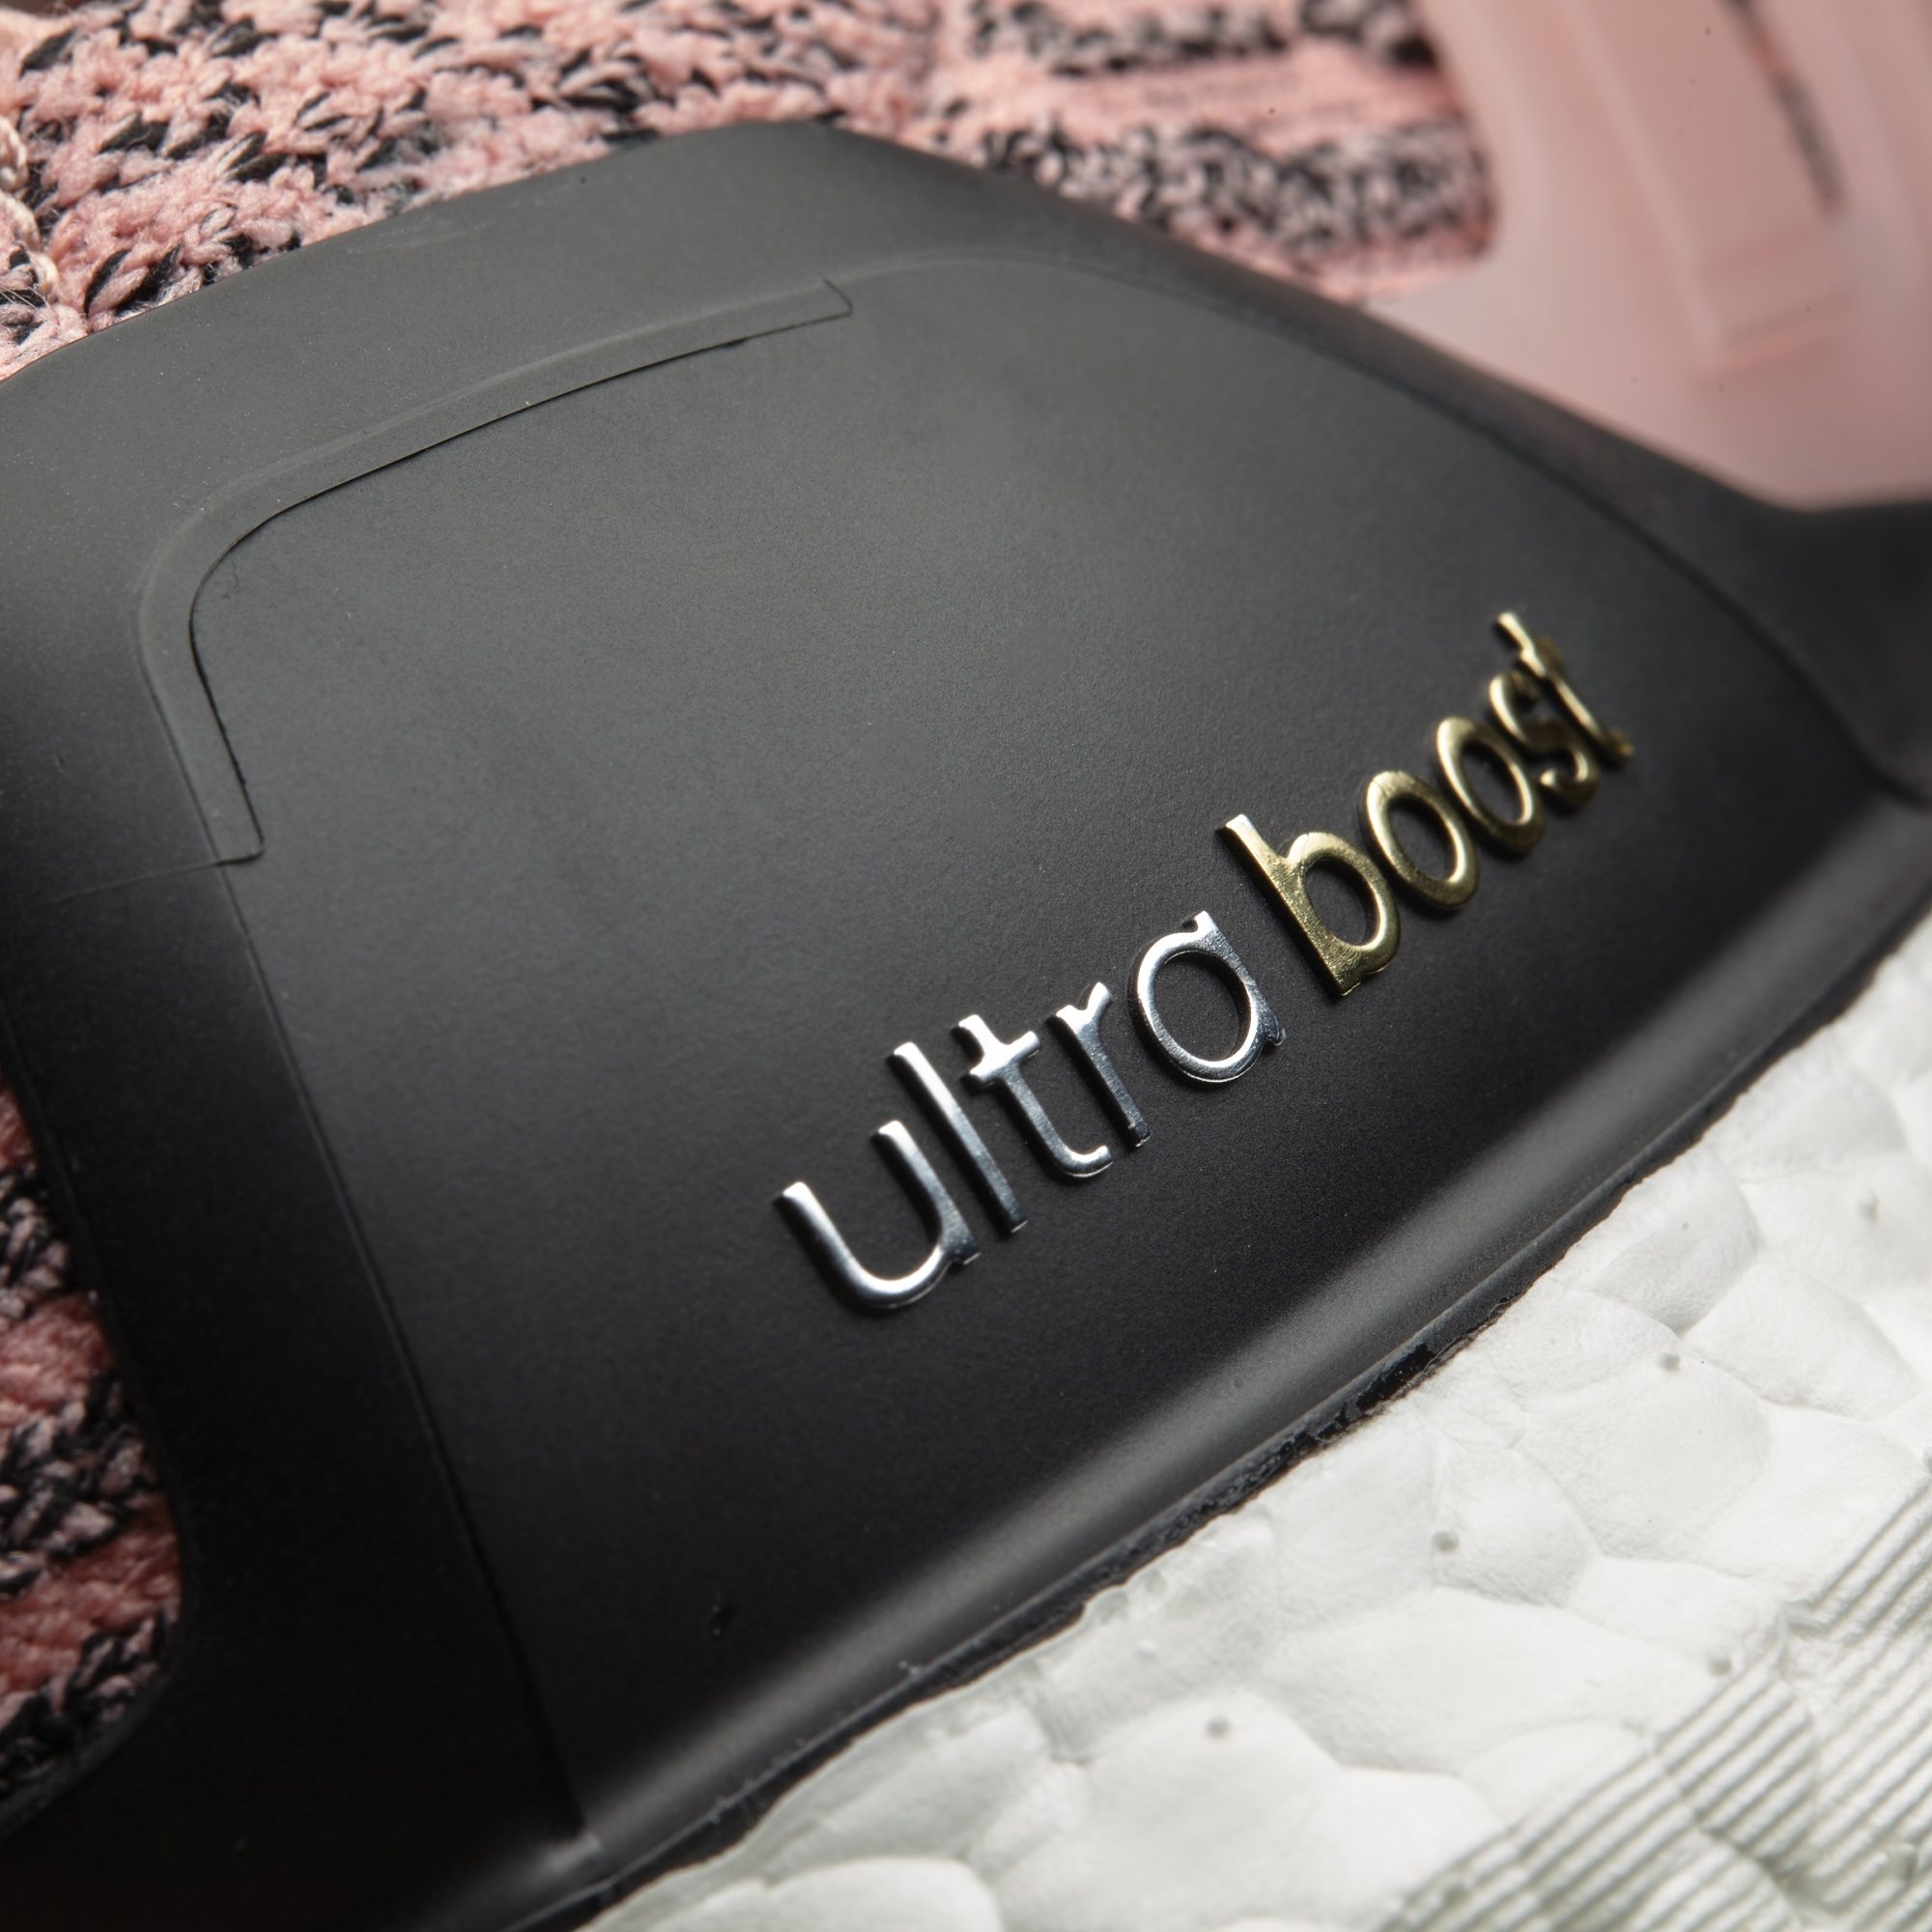 Adidas W Ultra Boost
Still Breeze / Core Black